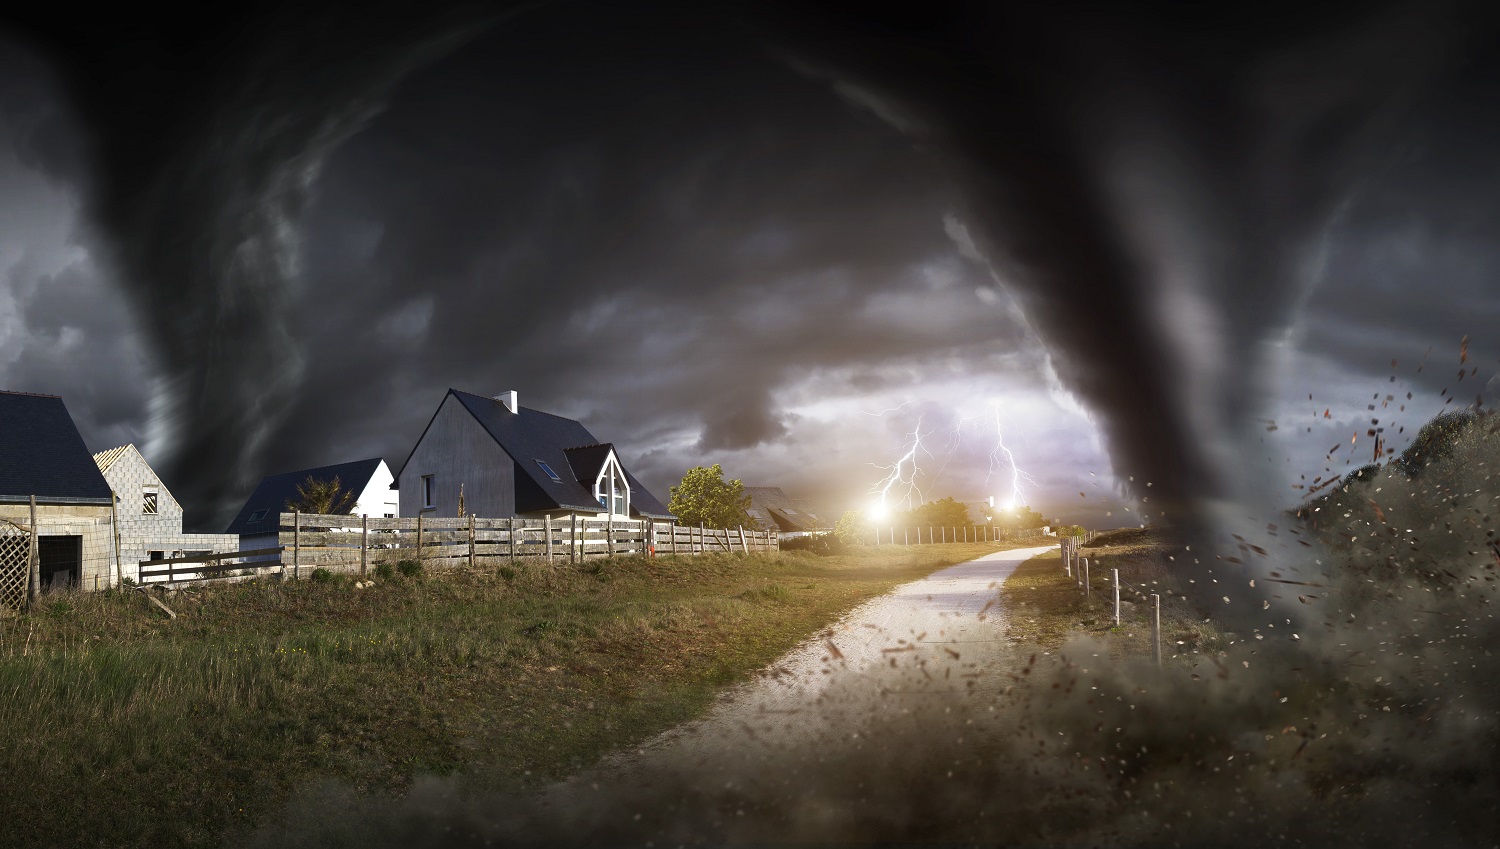 Tormentas y tornados: Formación, daños y medidas de protección